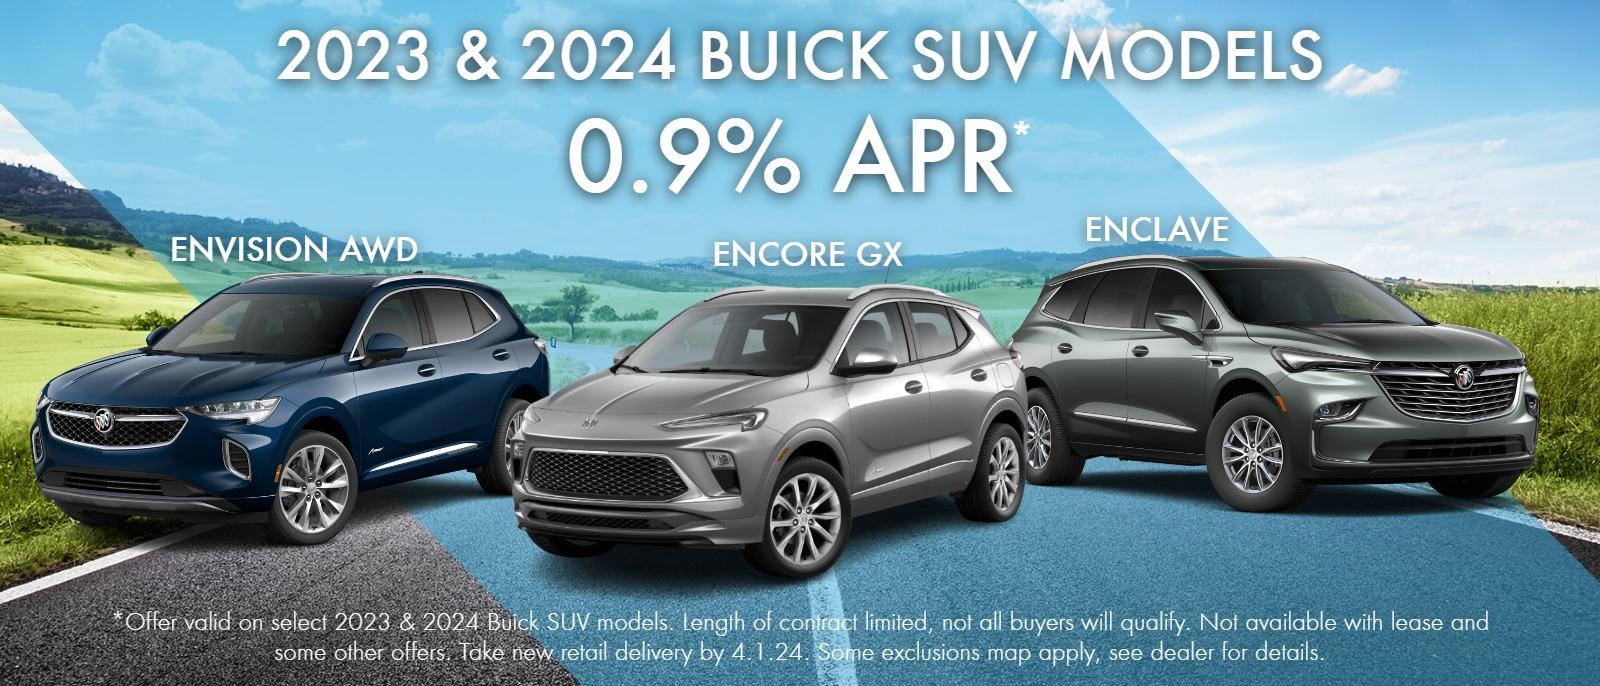 2023 & 2024 Buick Models
0.9% APR